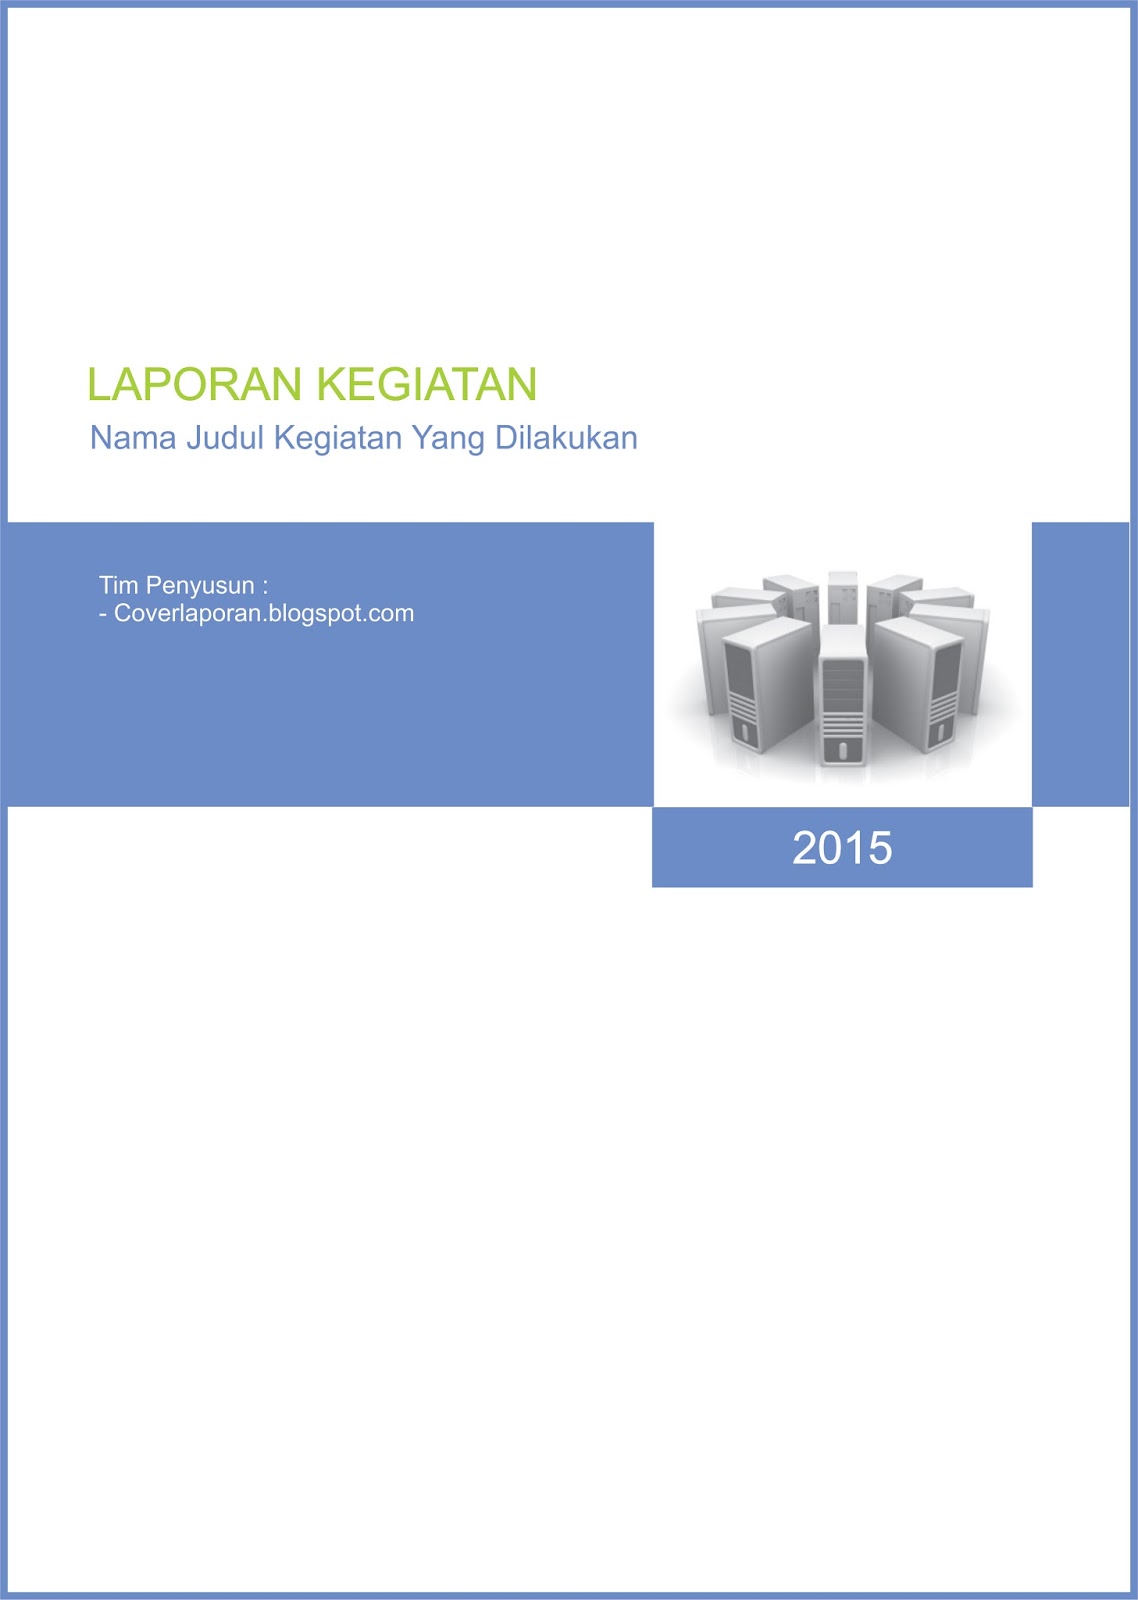 Cover Laporan Kegiatan - Download Contoh Cover Laporan